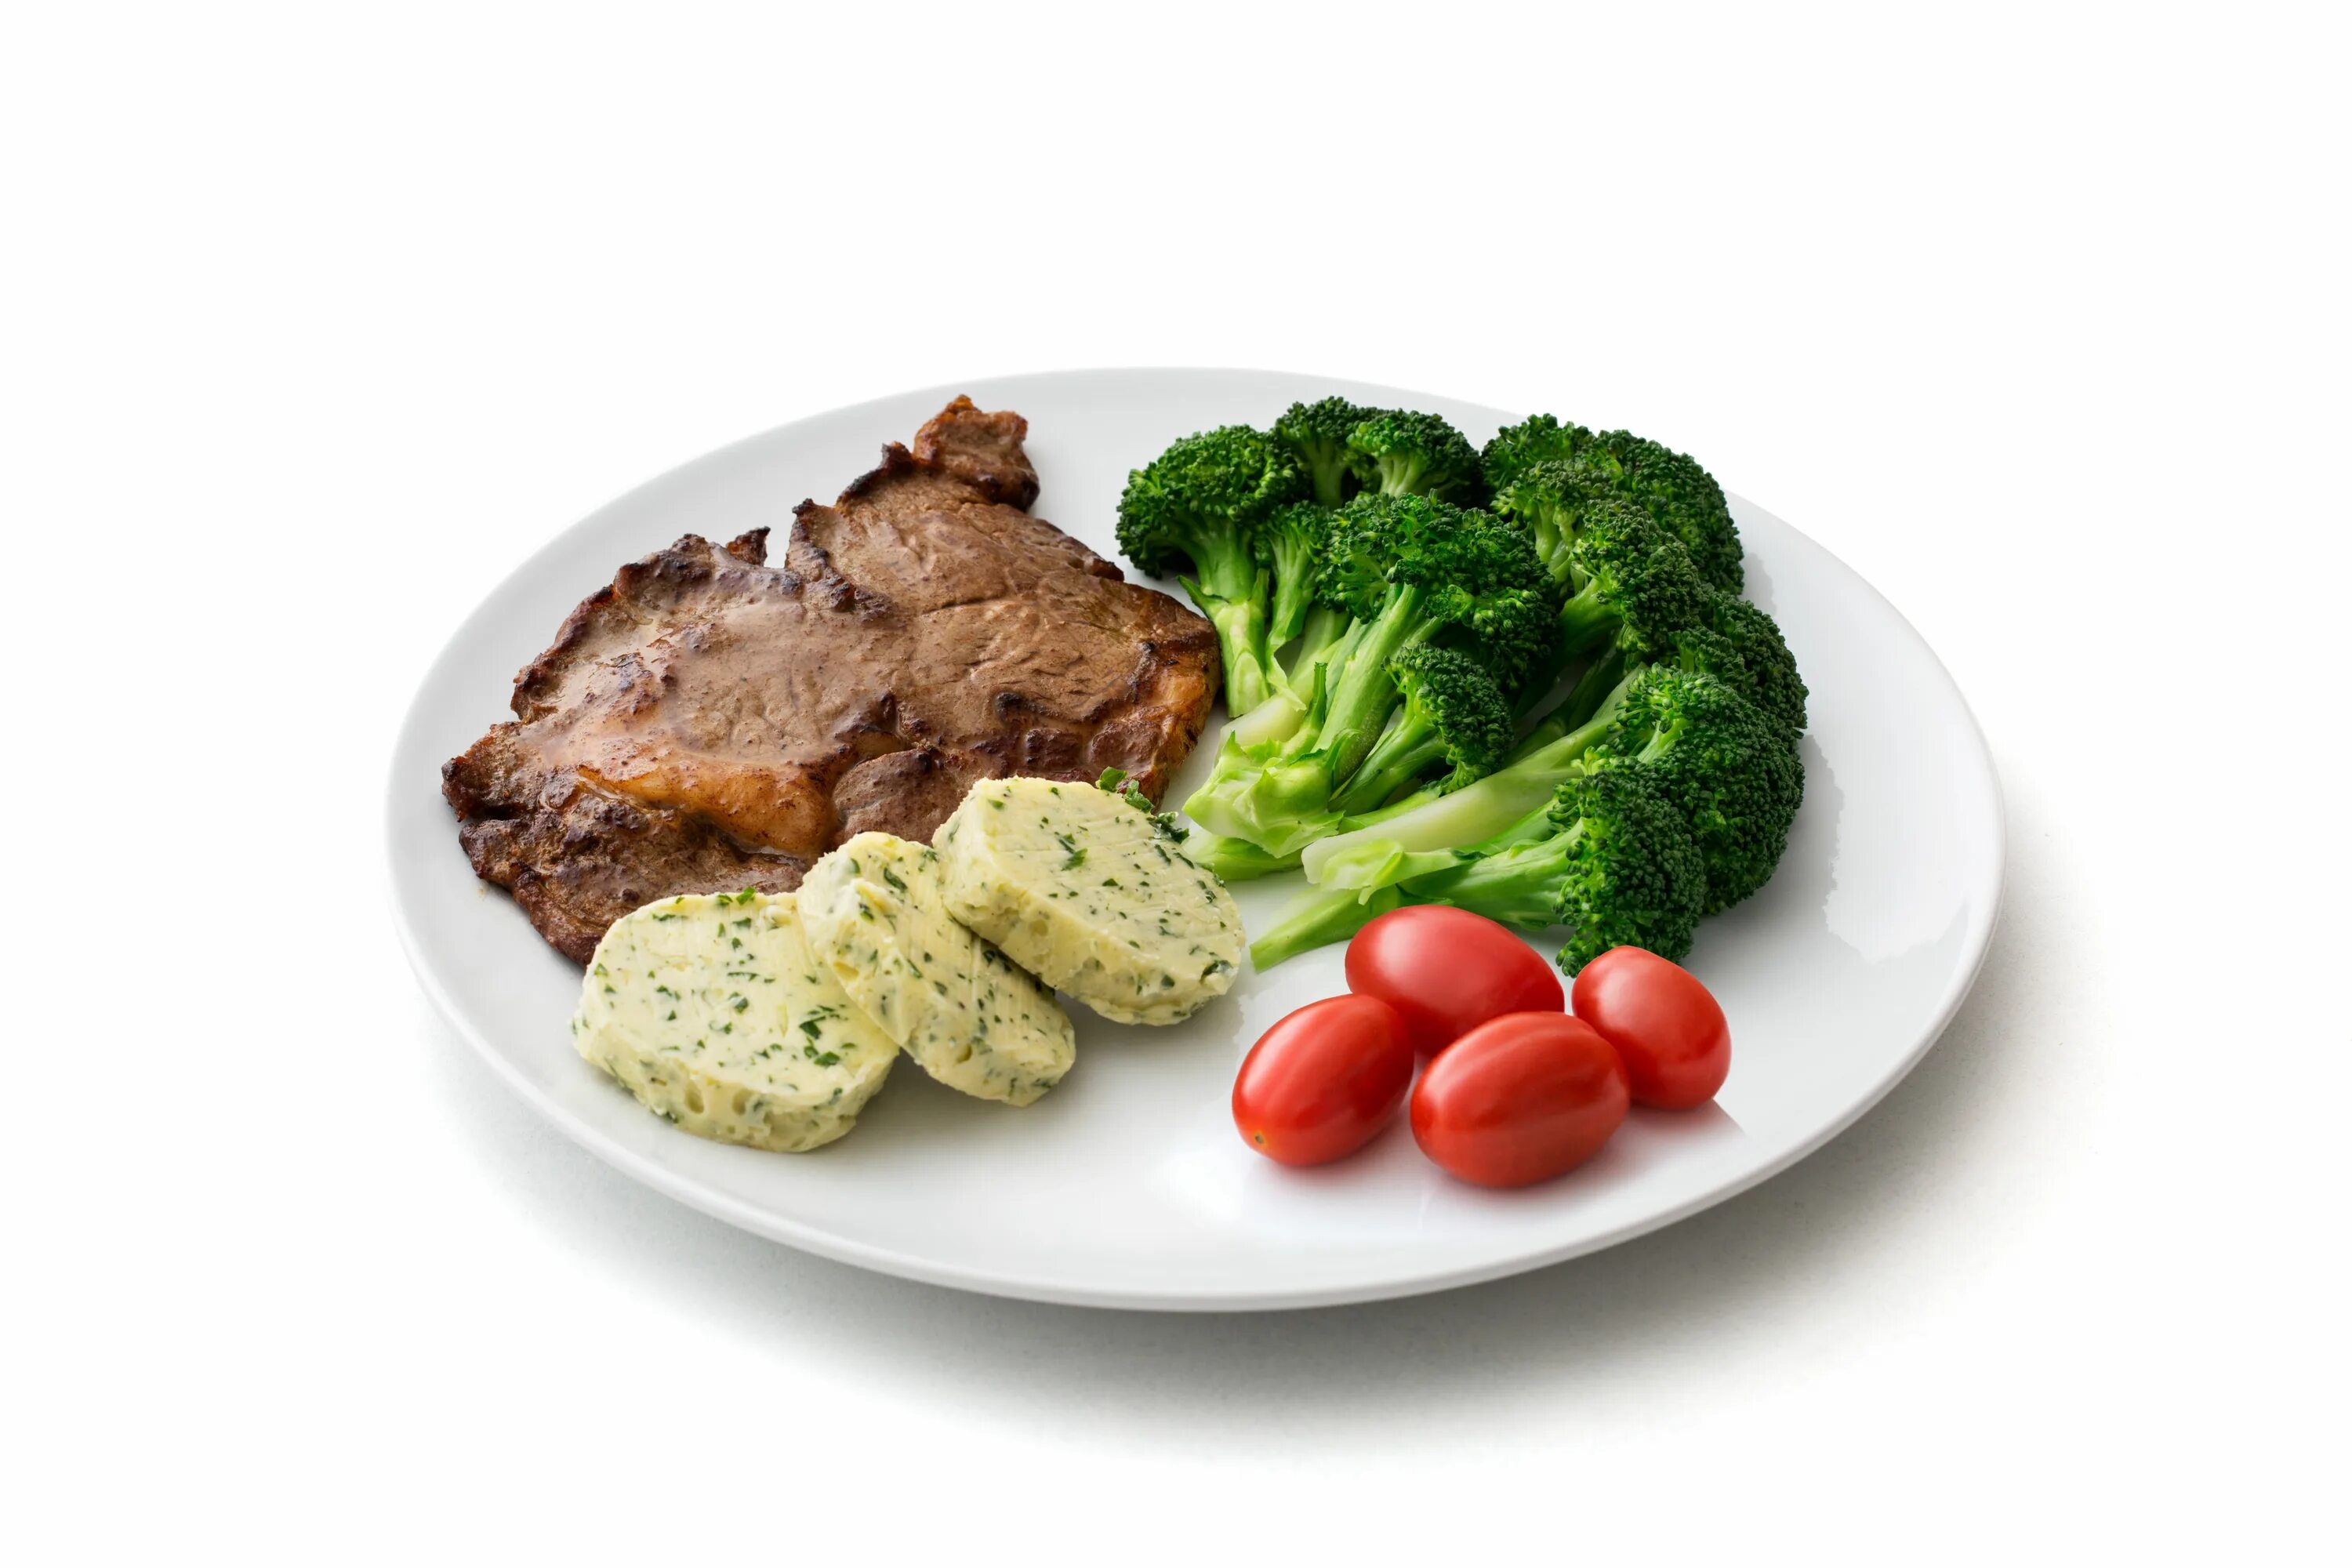 Тарелка с едой. Блюда на белом фоне. Тарелка с мясом и овощами. Диетические блюда на белом фоне.